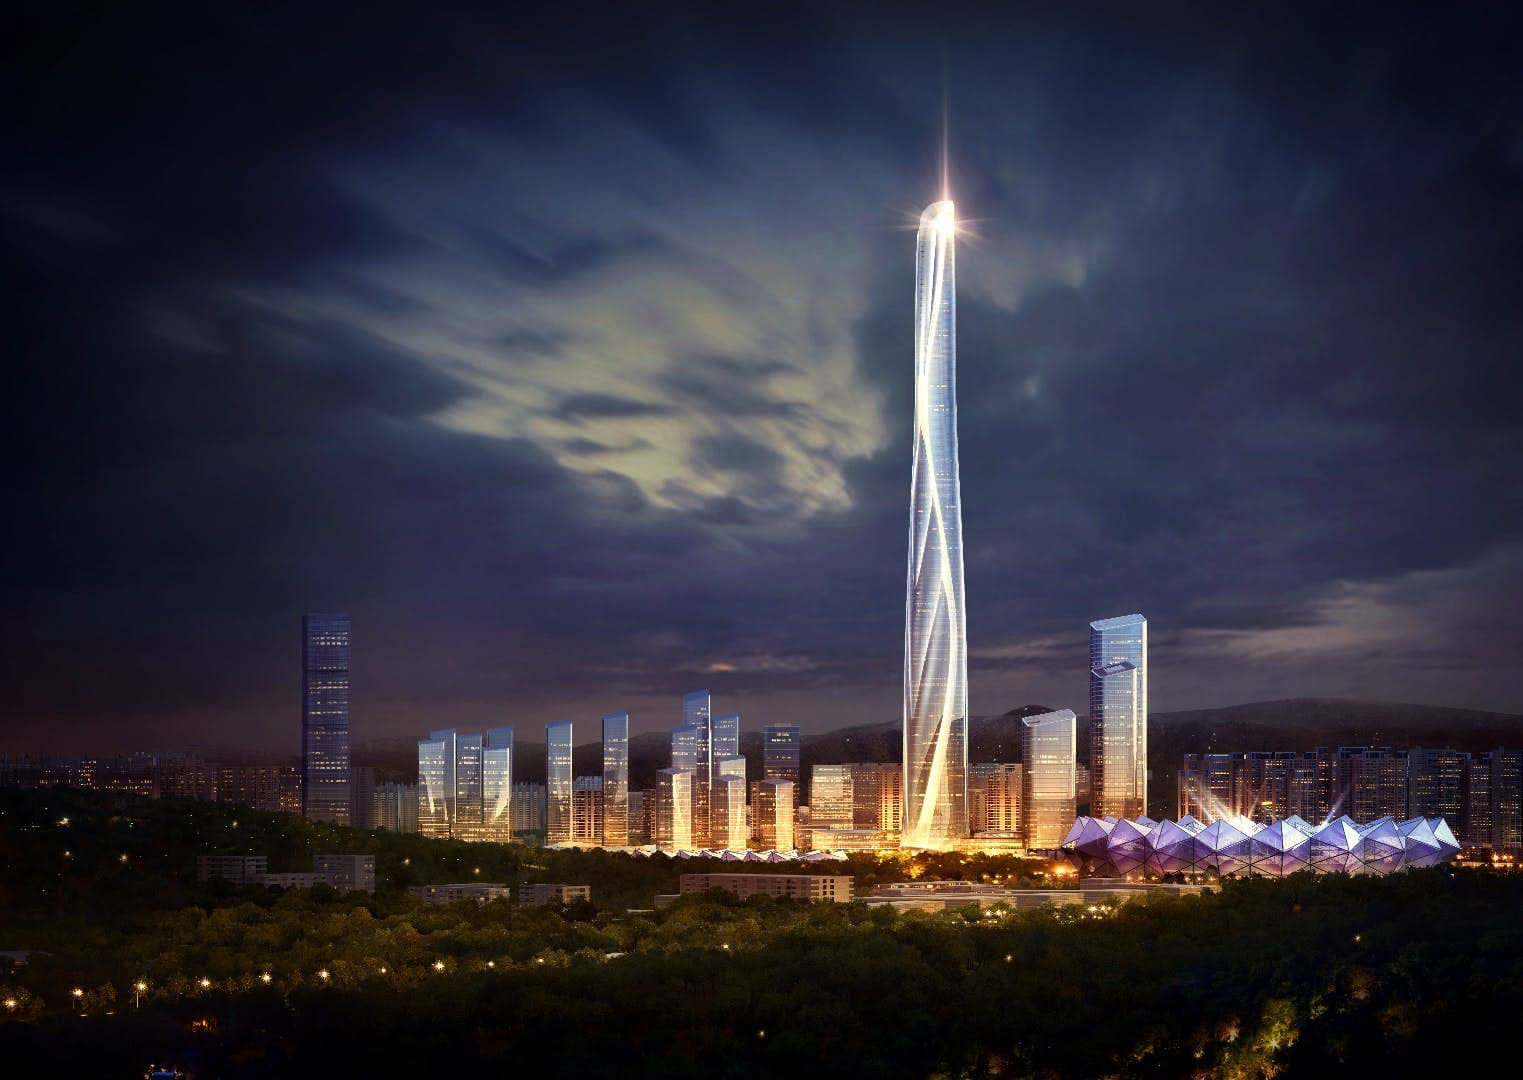 The Shenzhen-Hong Kong International Center Will Be 2nd Tallest Building!